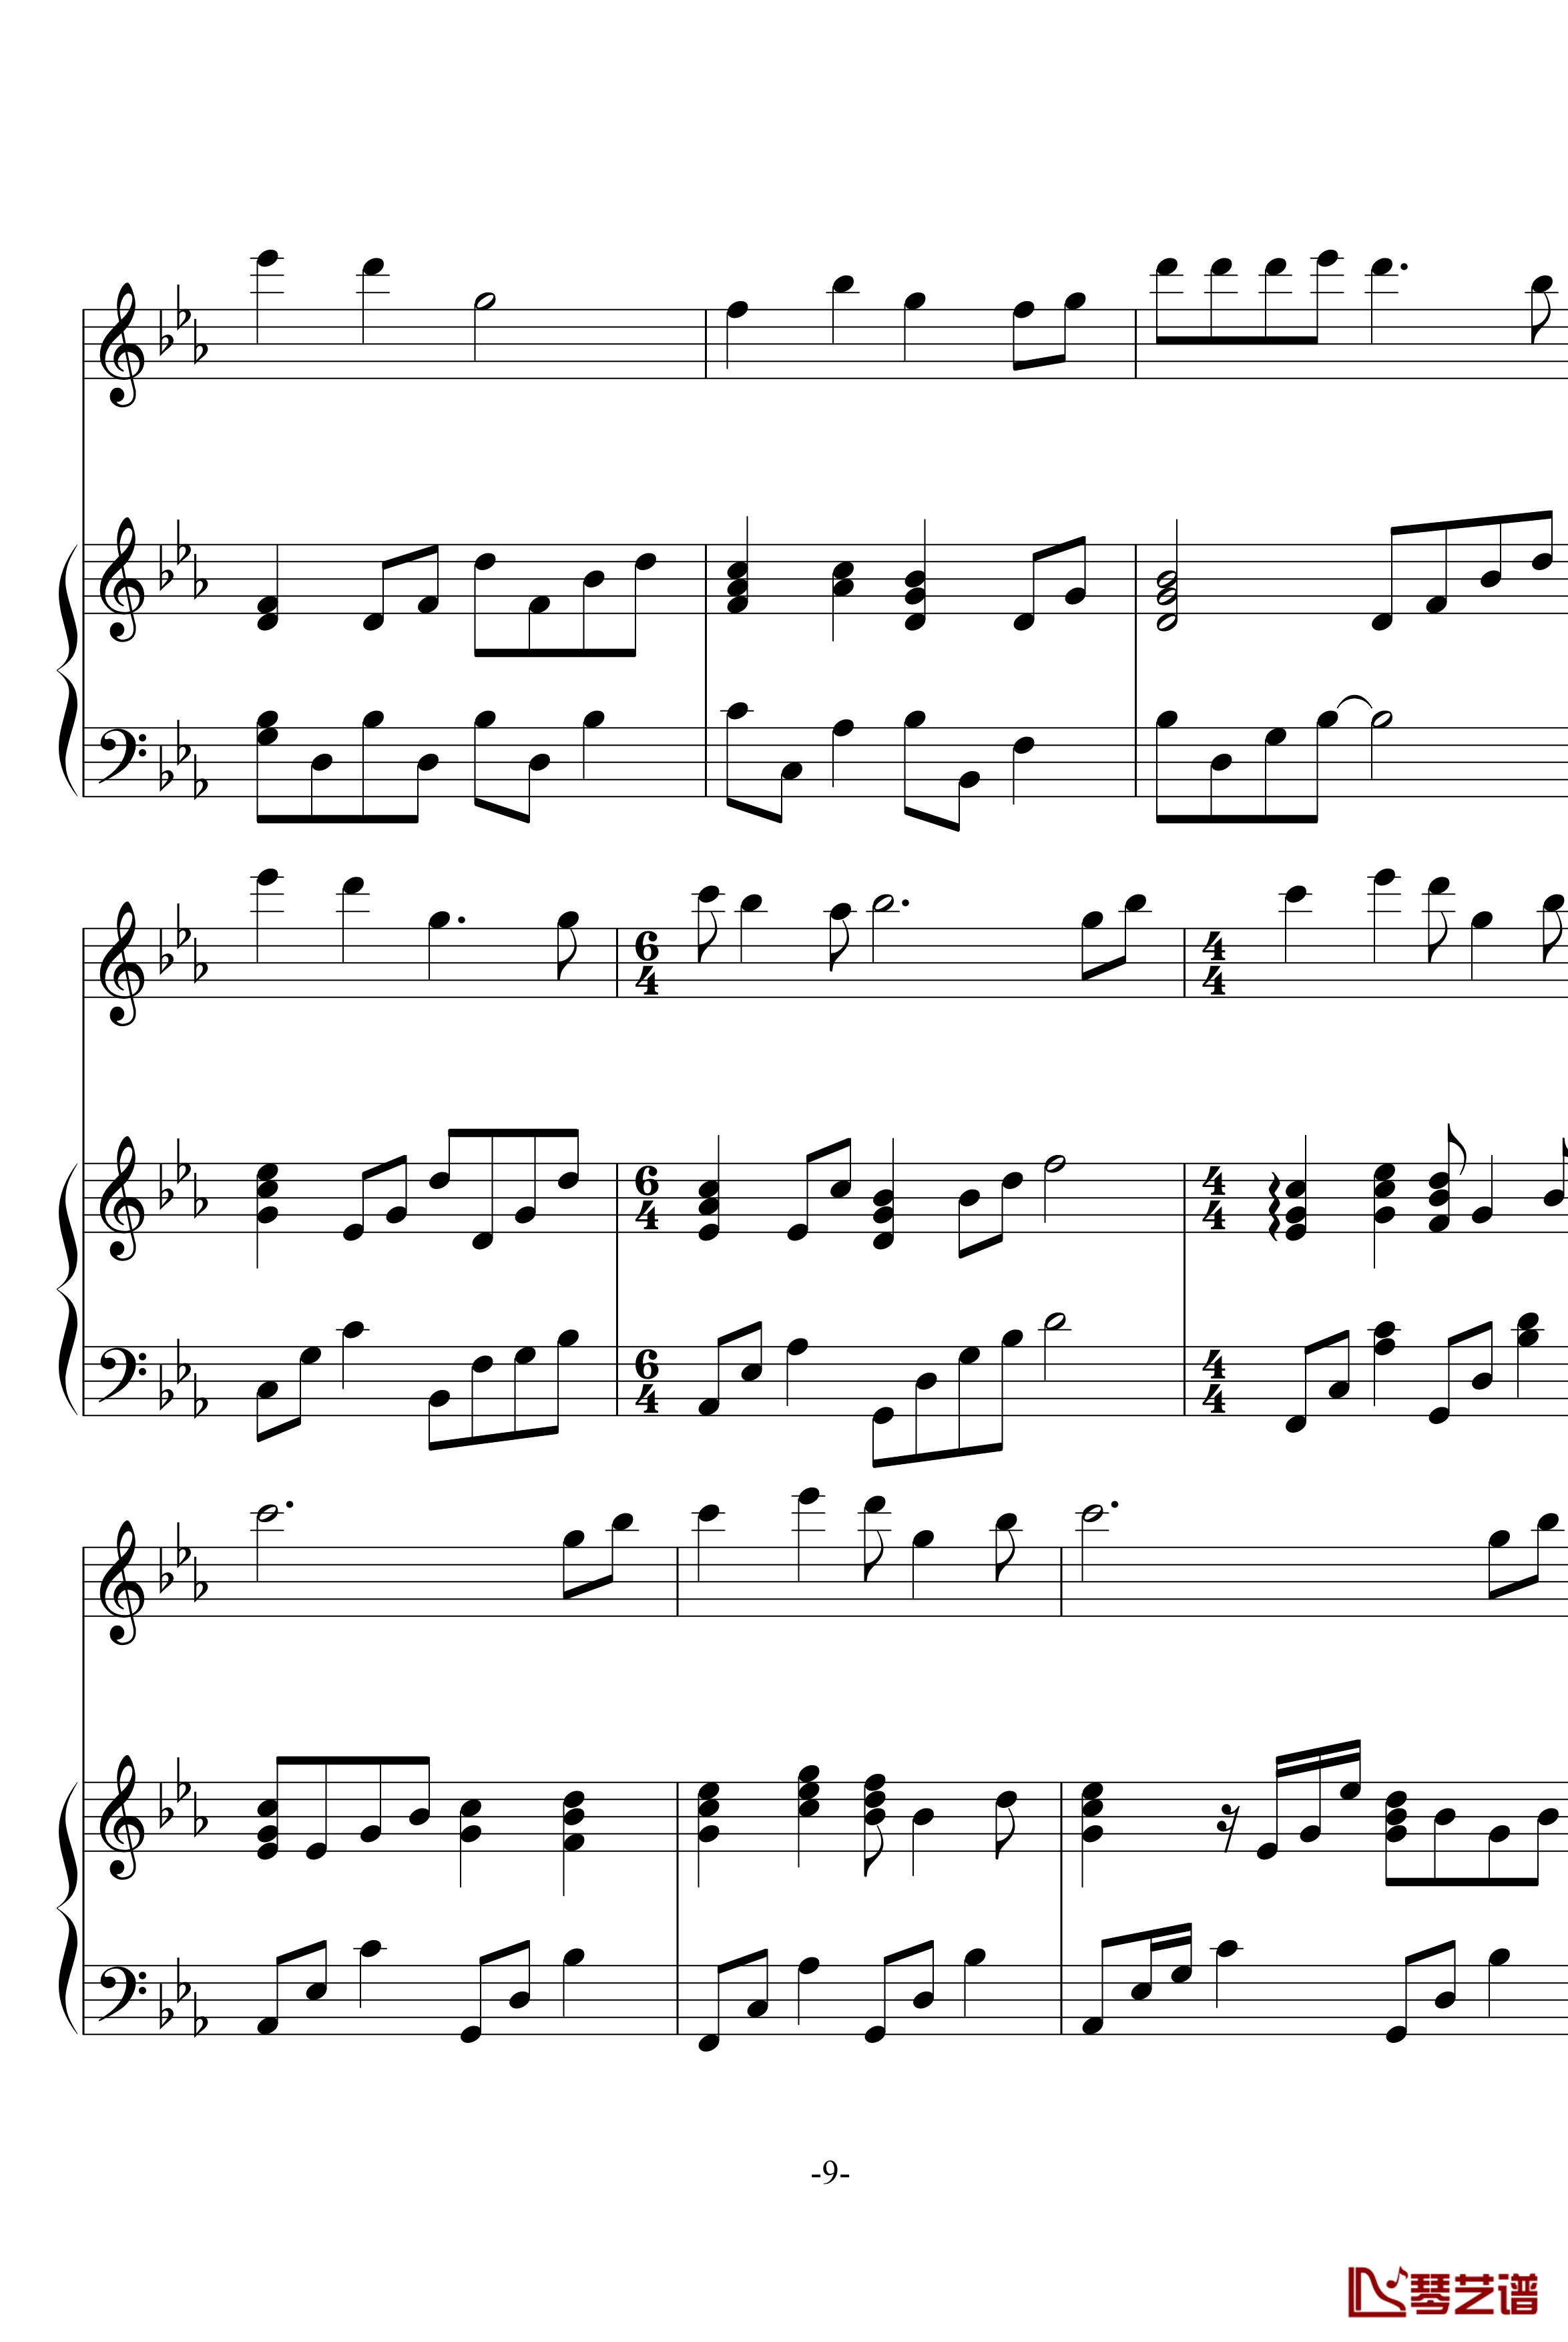 幽灵公主笛子与钢琴钢琴谱-OST-久石让9